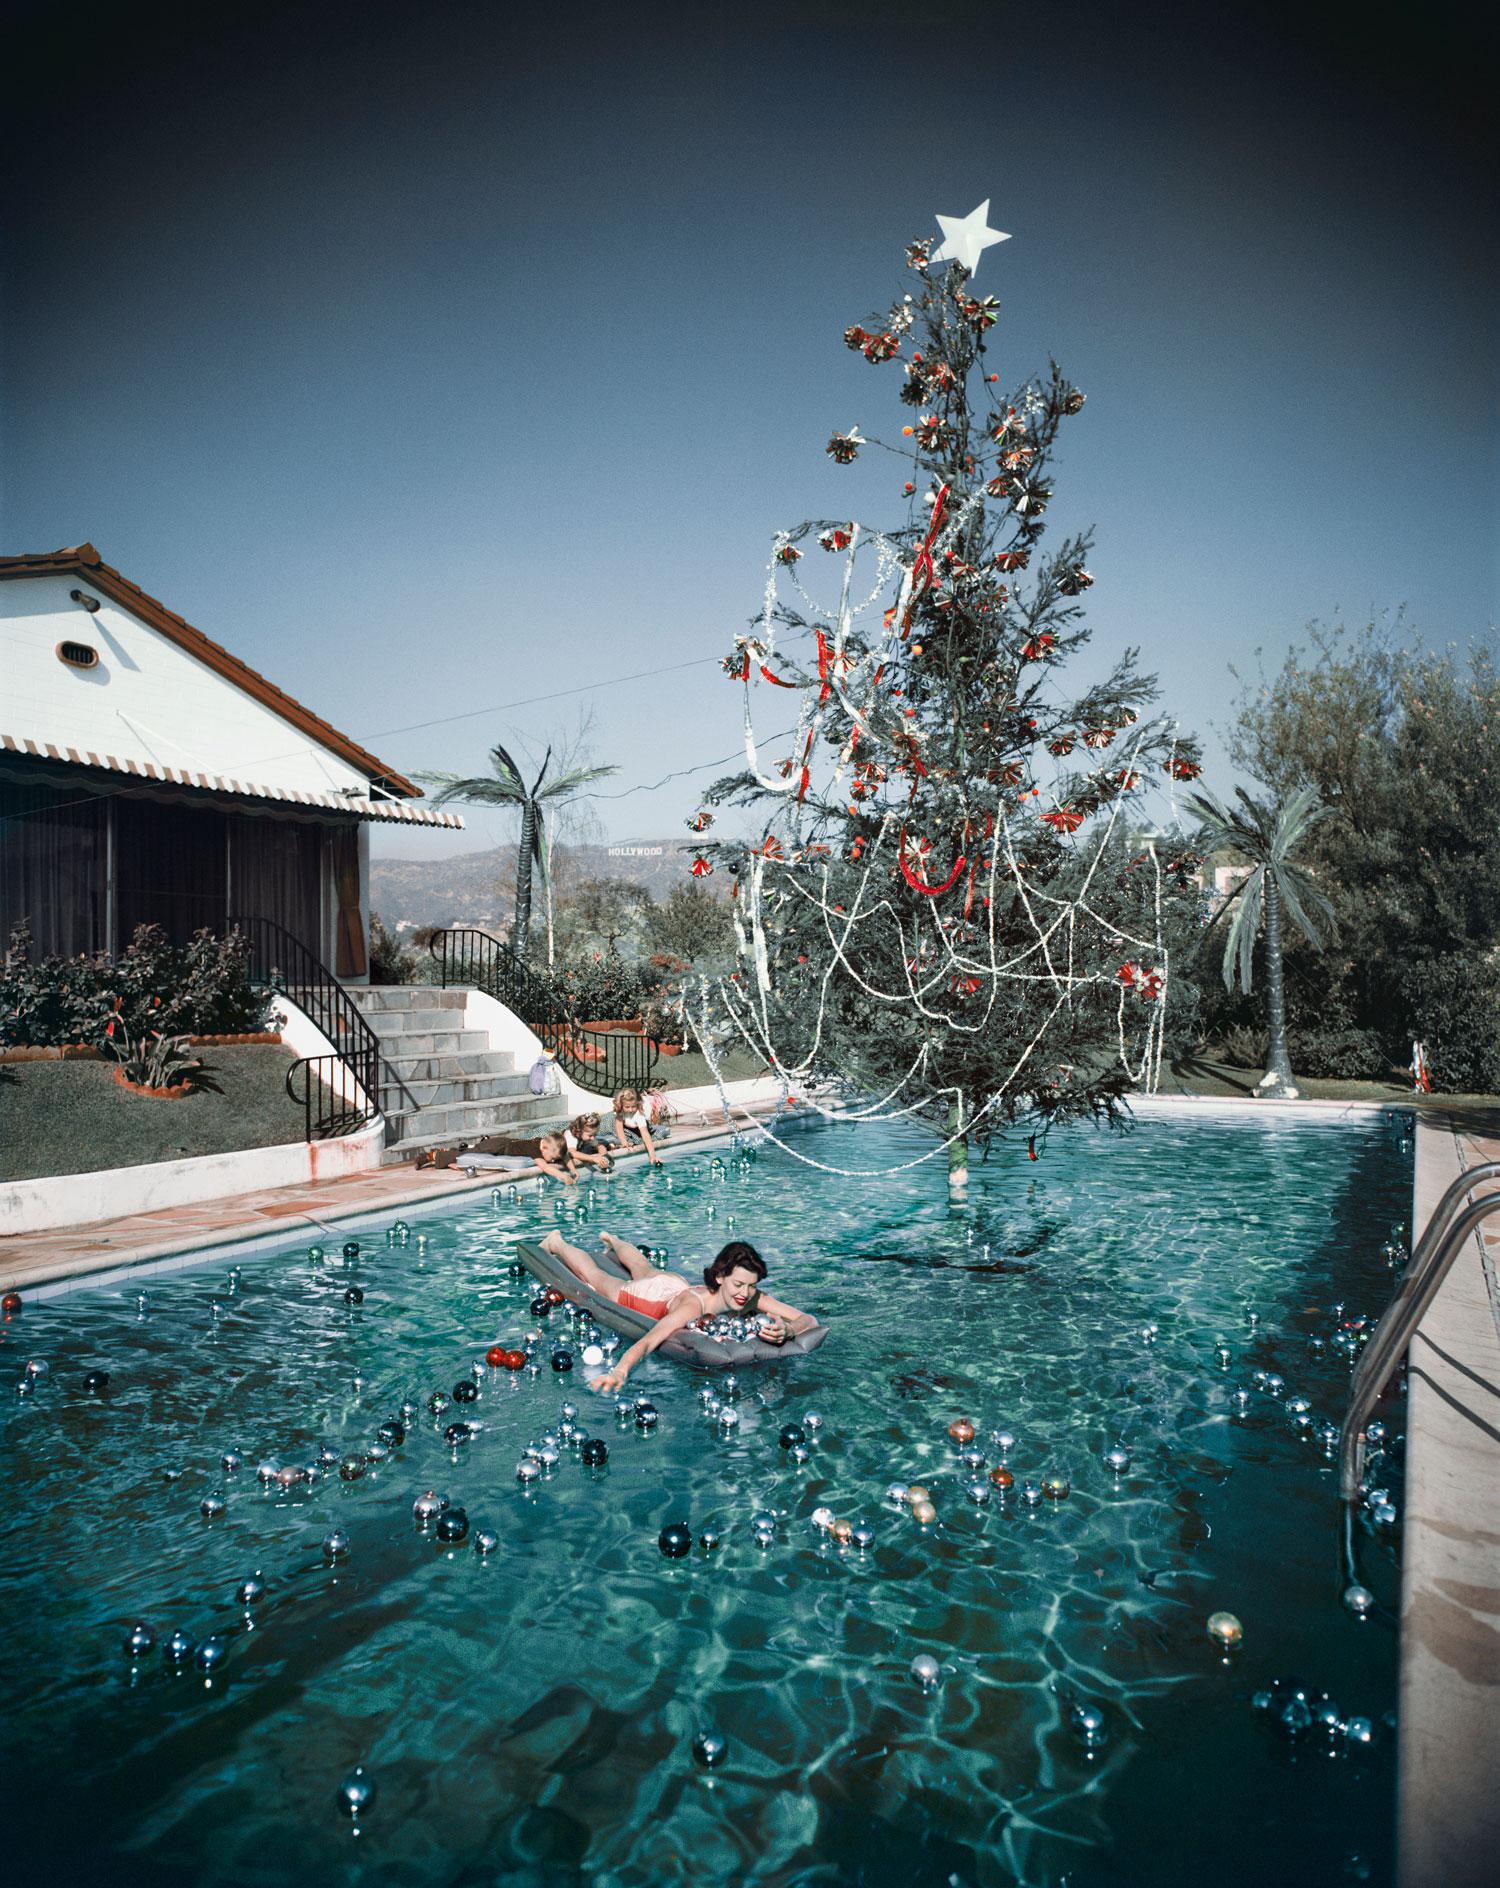 Slim Aarons
Nage de Noël
1954 (imprimé ultérieurement)
C imprimé 
Édition de 150 exemplaires numérotés et estampillés par la succession 
avec certificat d'authenticité

Rita Aarons, épouse du photographe Slim Aarons, nageant dans une piscine ornée